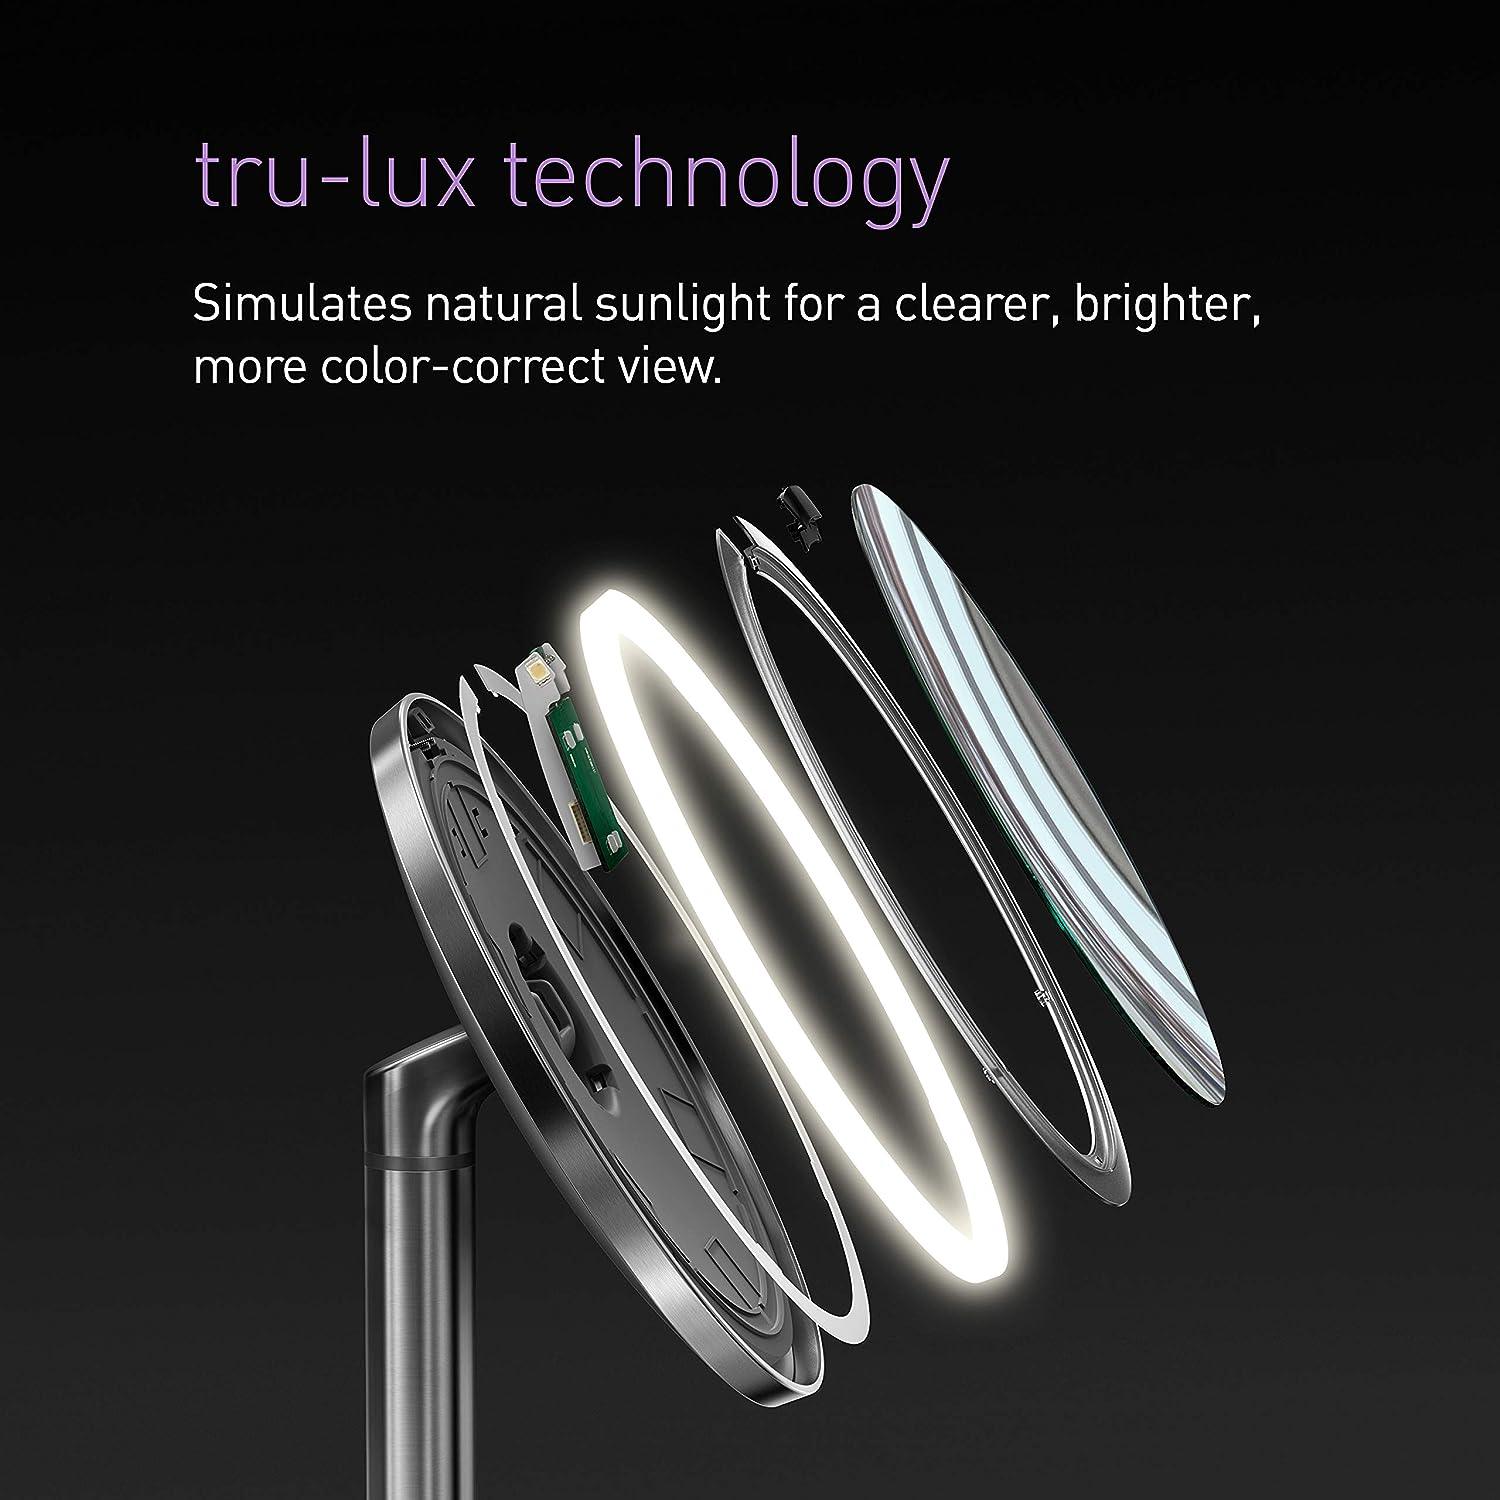 Espejo de acero inoxidable con sensor de luz Simplehuman, de 5 pulgadas, ideal - VIRTUAL MUEBLES